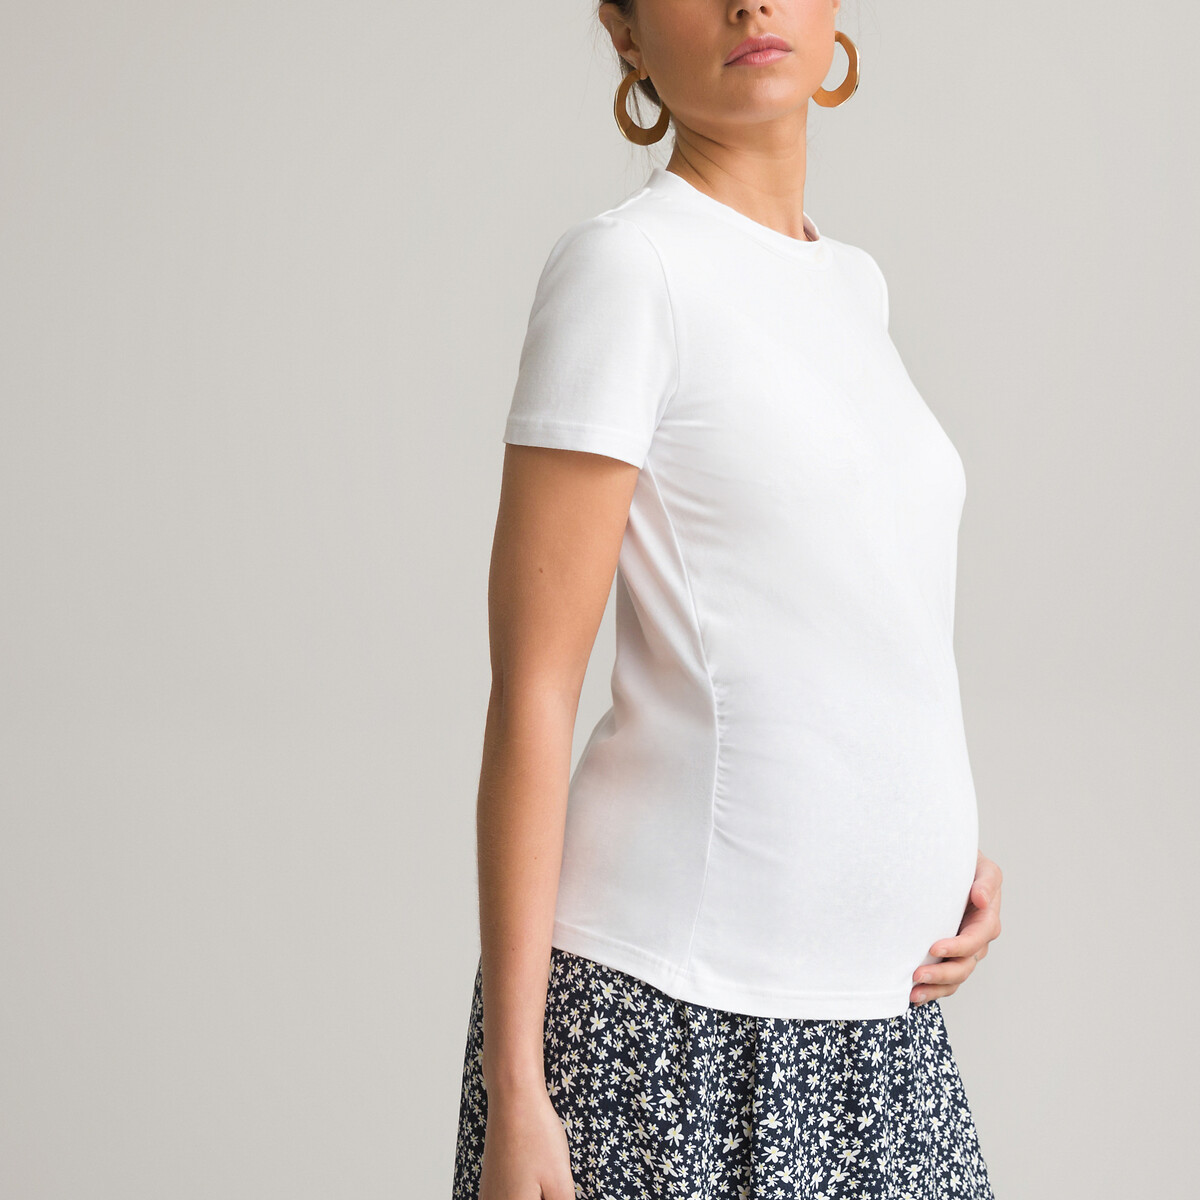 MAXMODA Top Maternité Allaitement Femmes Enceintes Habits Haut Grossesse Manche 3/4 T-Shirt S-XXL